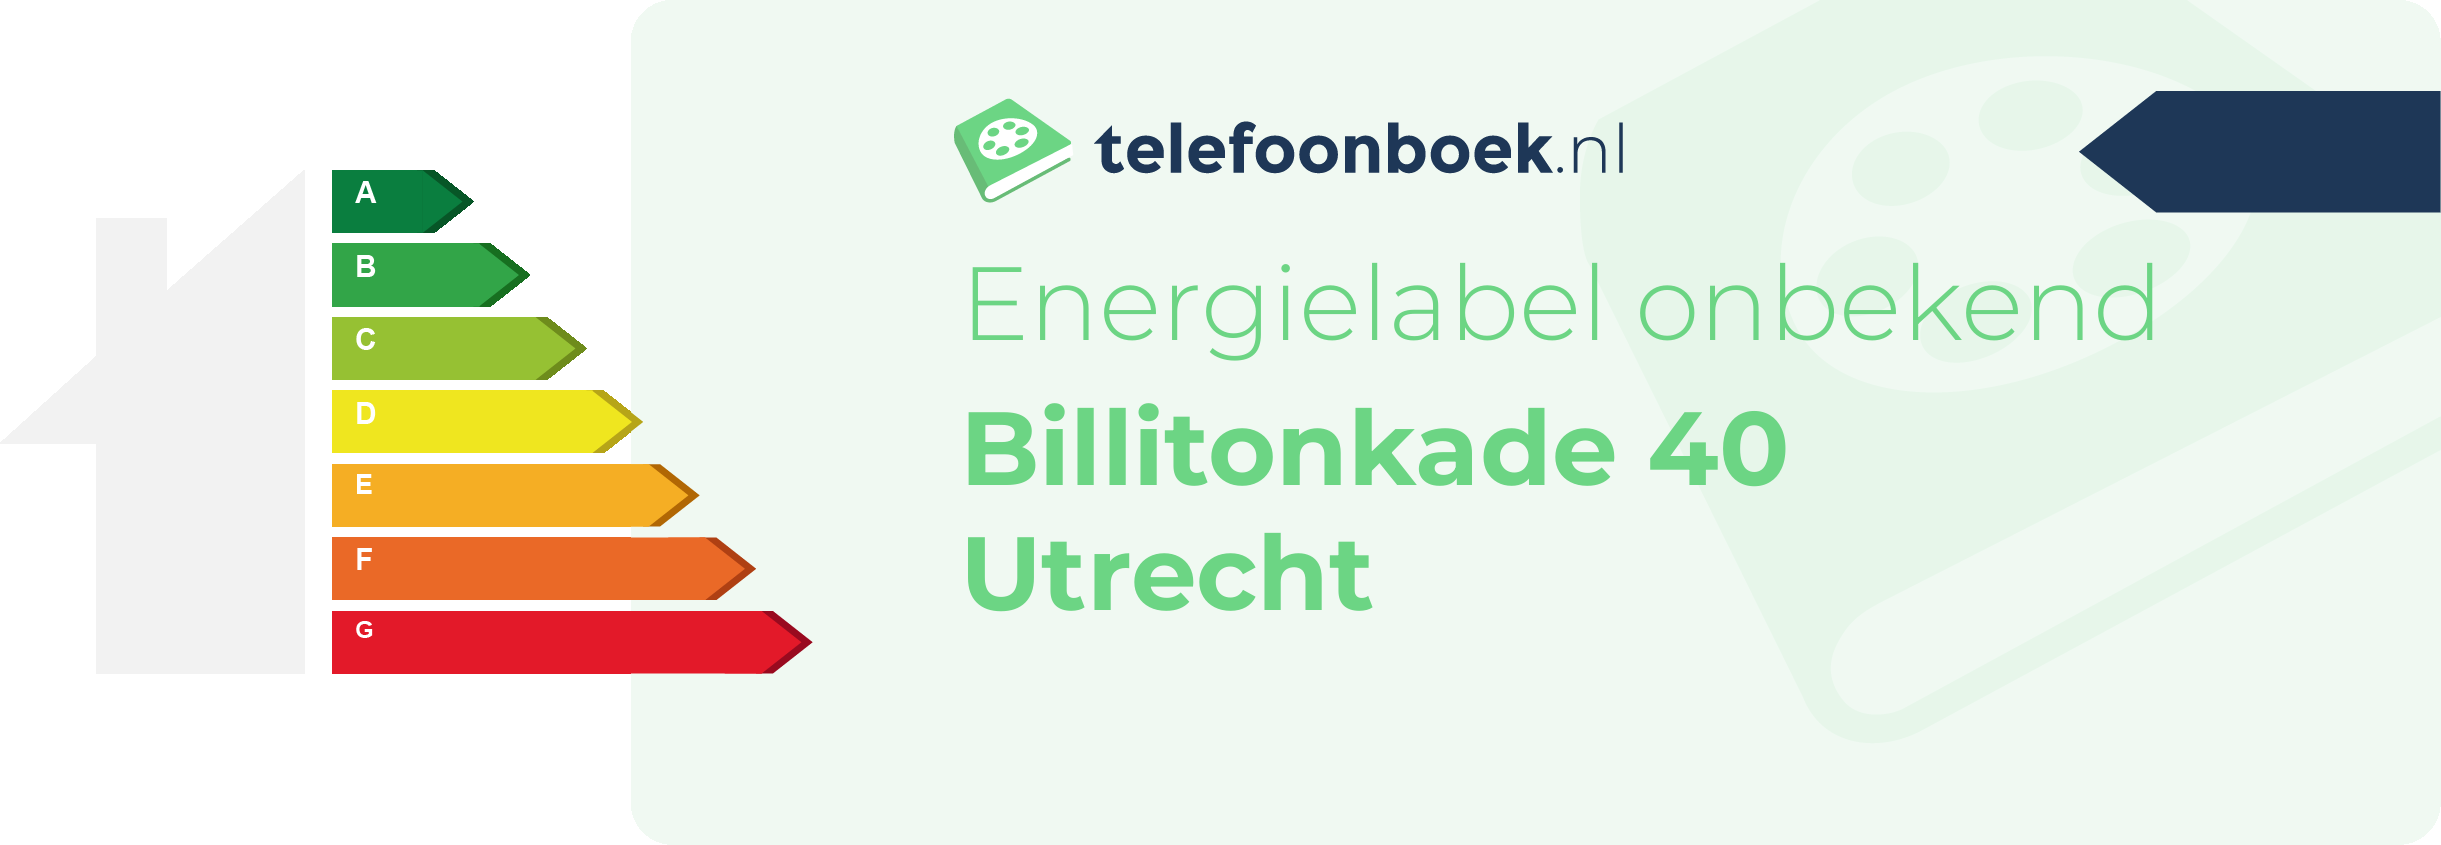 Energielabel Billitonkade 40 Utrecht